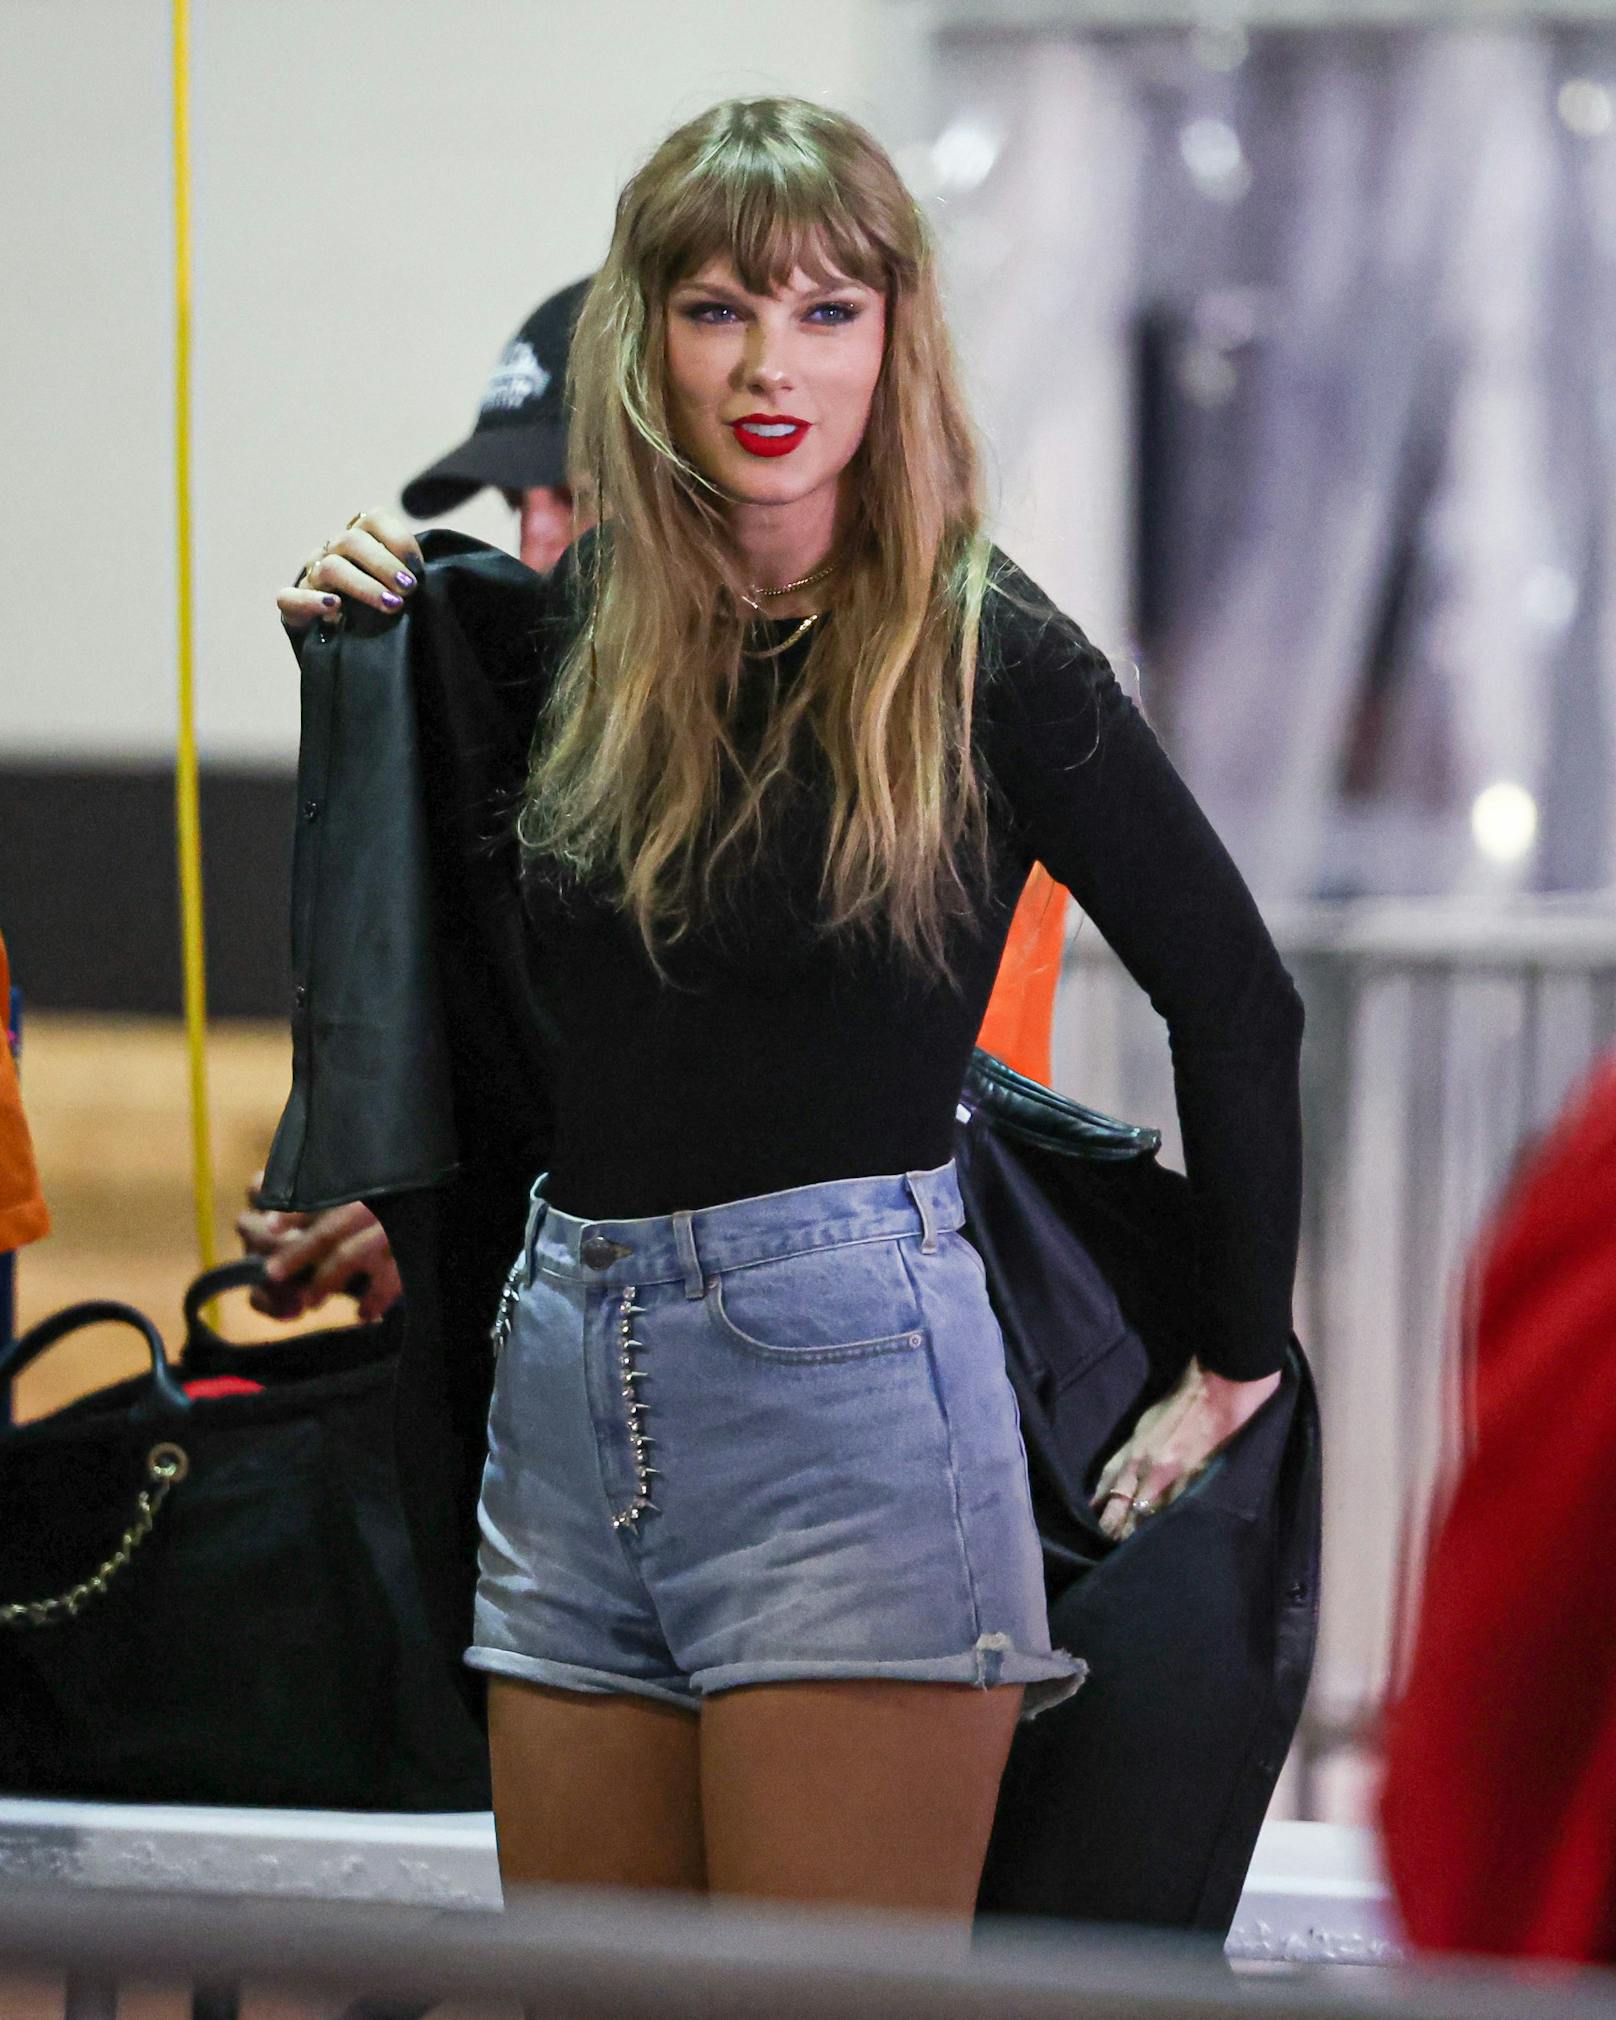 Taylor Swift zeigte sich mit rotem Lippenstift, kurzer Jeans, langem schwarzen Shirt und einer Lederjacke im Stadion.